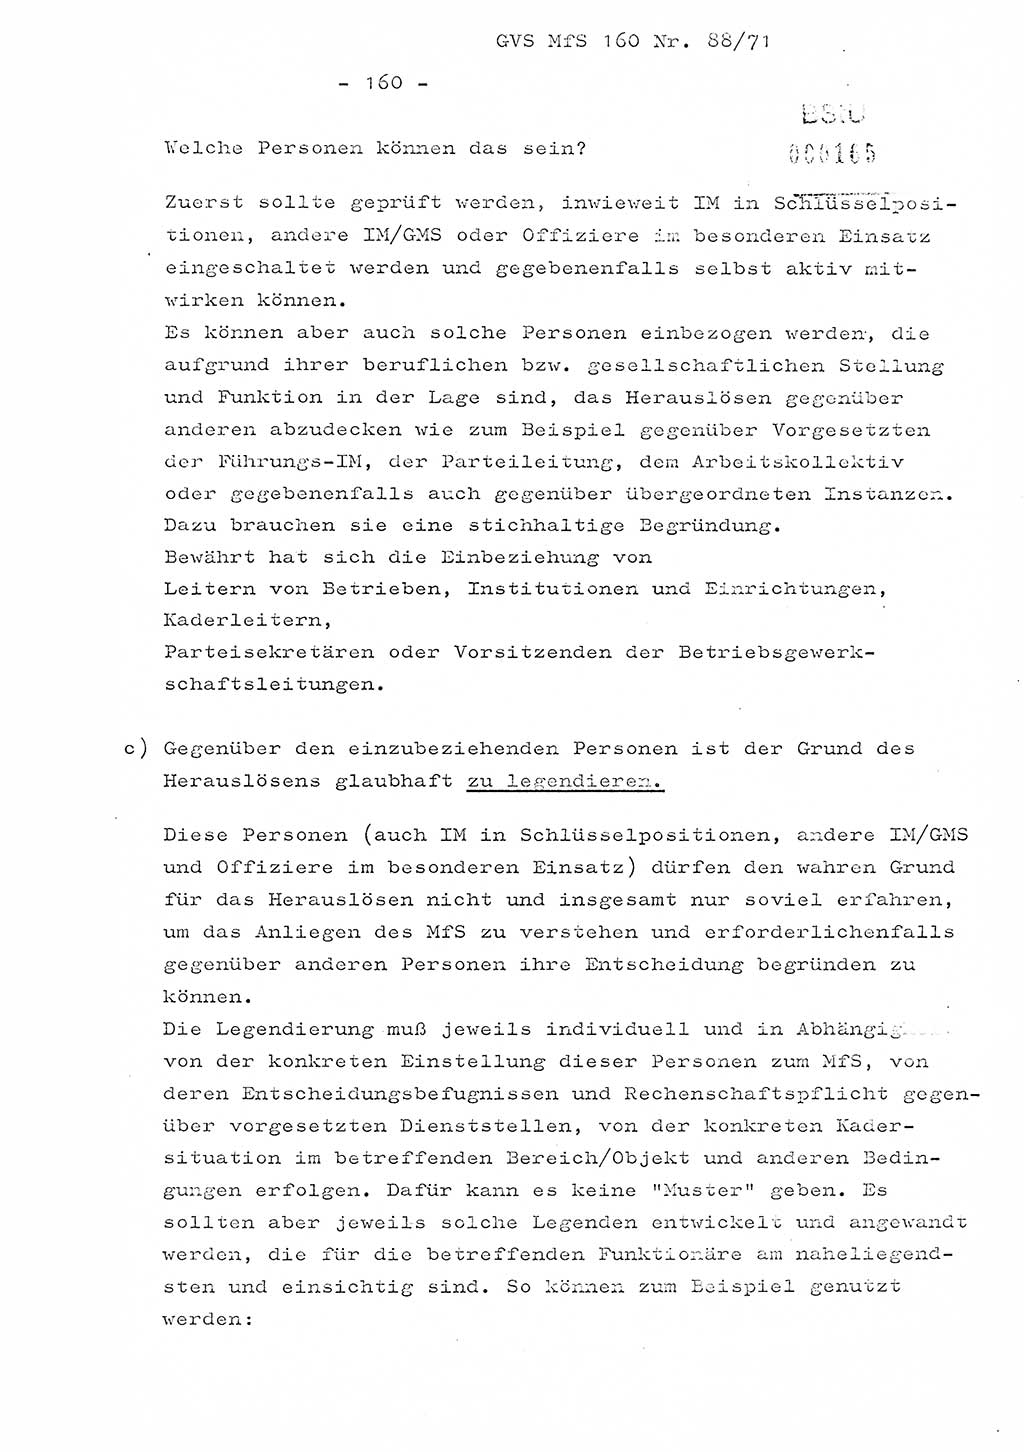 Dissertation Oberstleutnant Josef Schwarz (BV Schwerin), Major Fritz Amm (JHS), Hauptmann Peter Gräßler (JHS), Ministerium für Staatssicherheit (MfS) [Deutsche Demokratische Republik (DDR)], Juristische Hochschule (JHS), Geheime Verschlußsache (GVS) 160-88/71, Potsdam 1972, Seite 160 (Diss. MfS DDR JHS GVS 160-88/71 1972, S. 160)